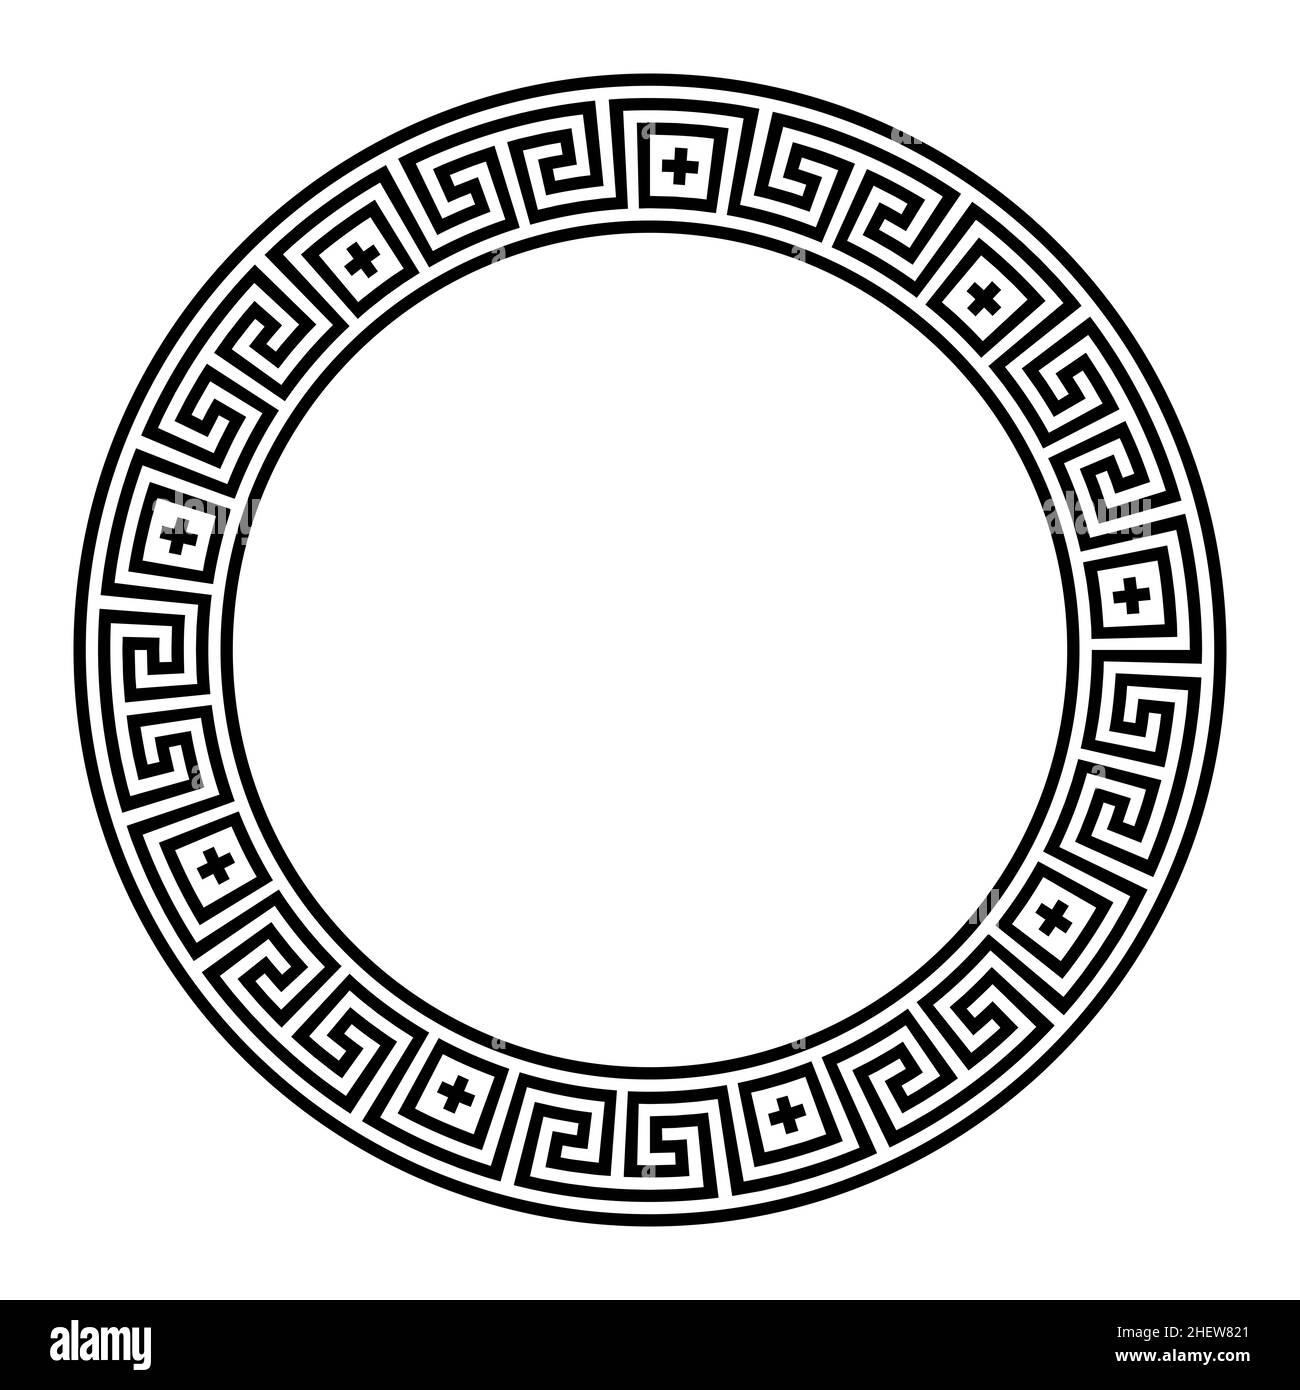 Motif de méandre, cadre de cercle avec symboles croisés.Bordure décorative composée de lignes sans couture, en forme de motif changeant de direction. Banque D'Images